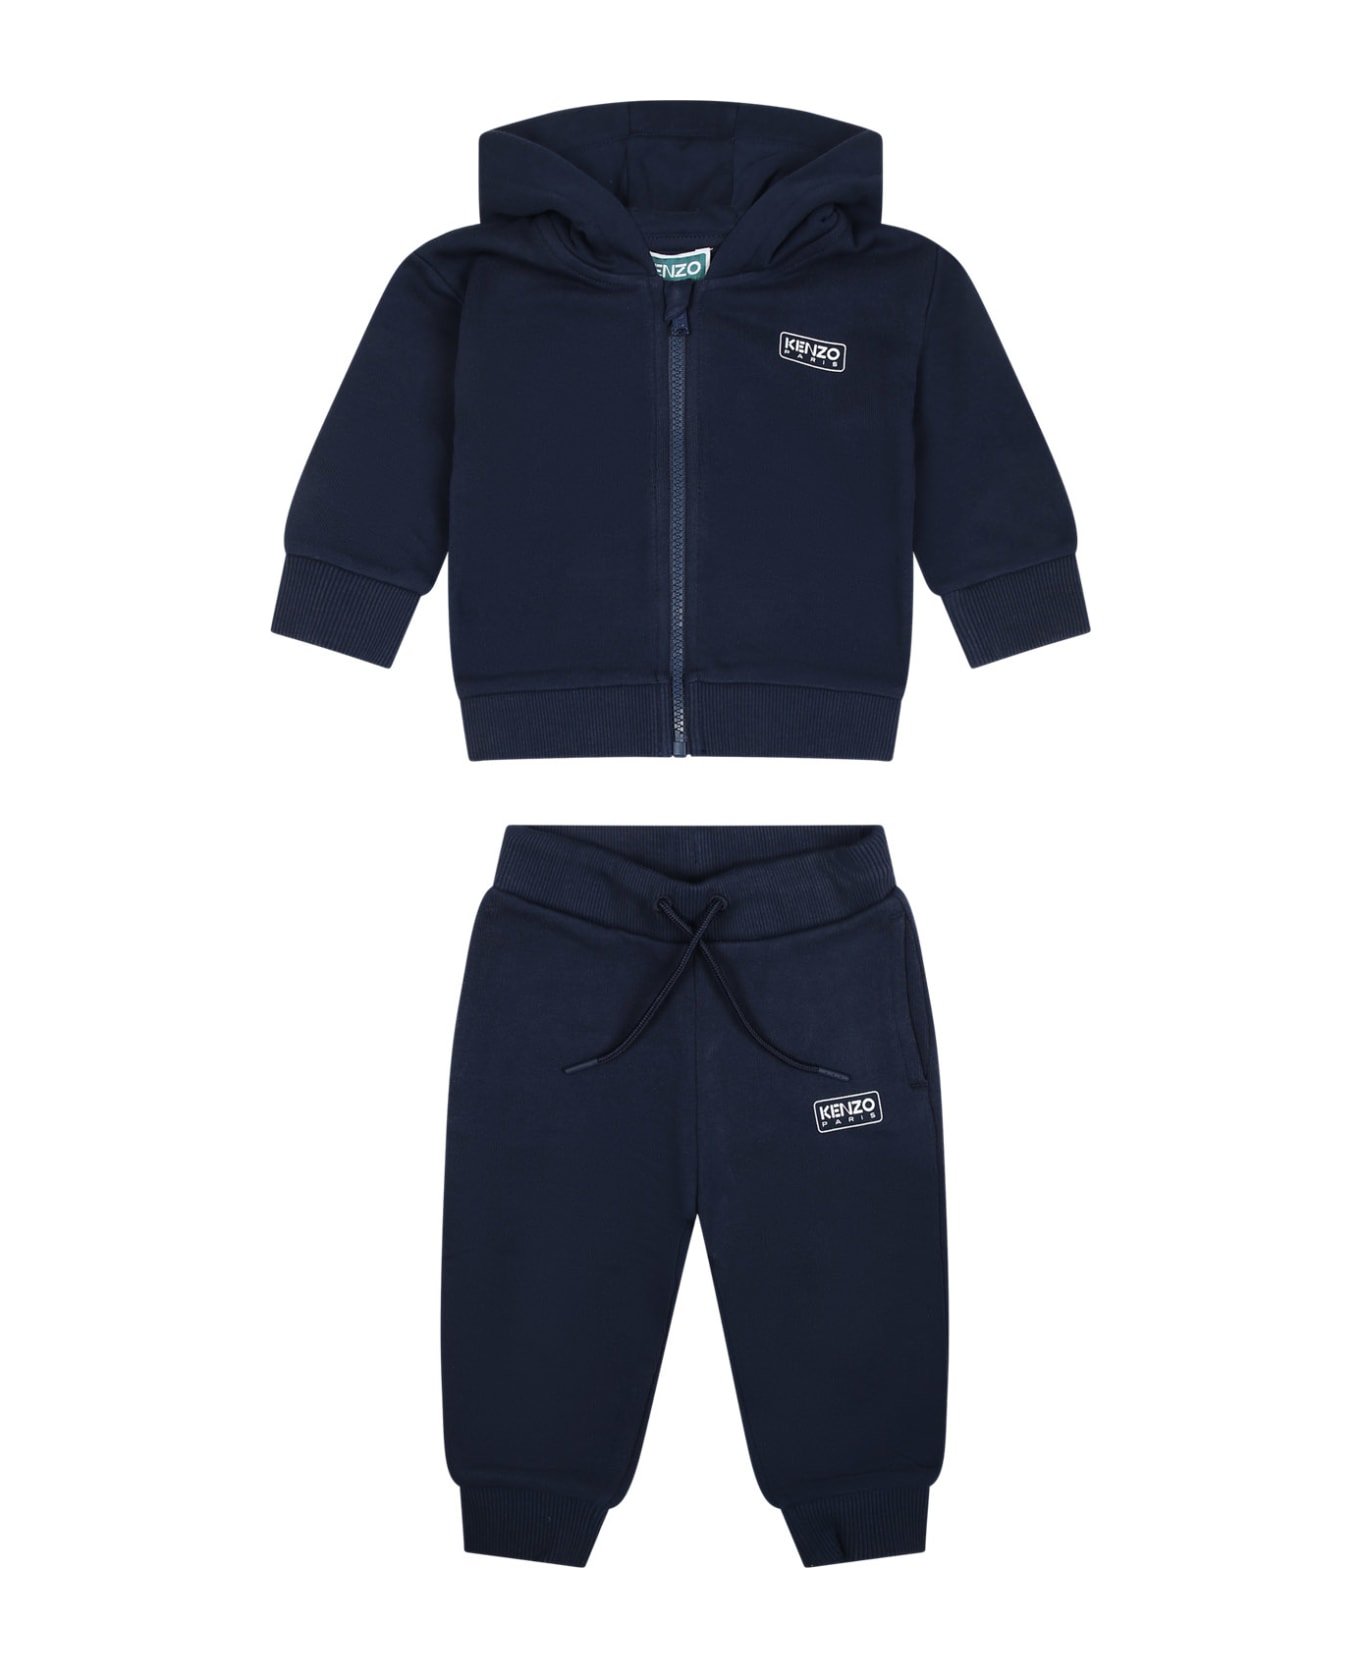 Kenzo Kids Blue Sporty Suit For Baby Boy With Logo - Blu